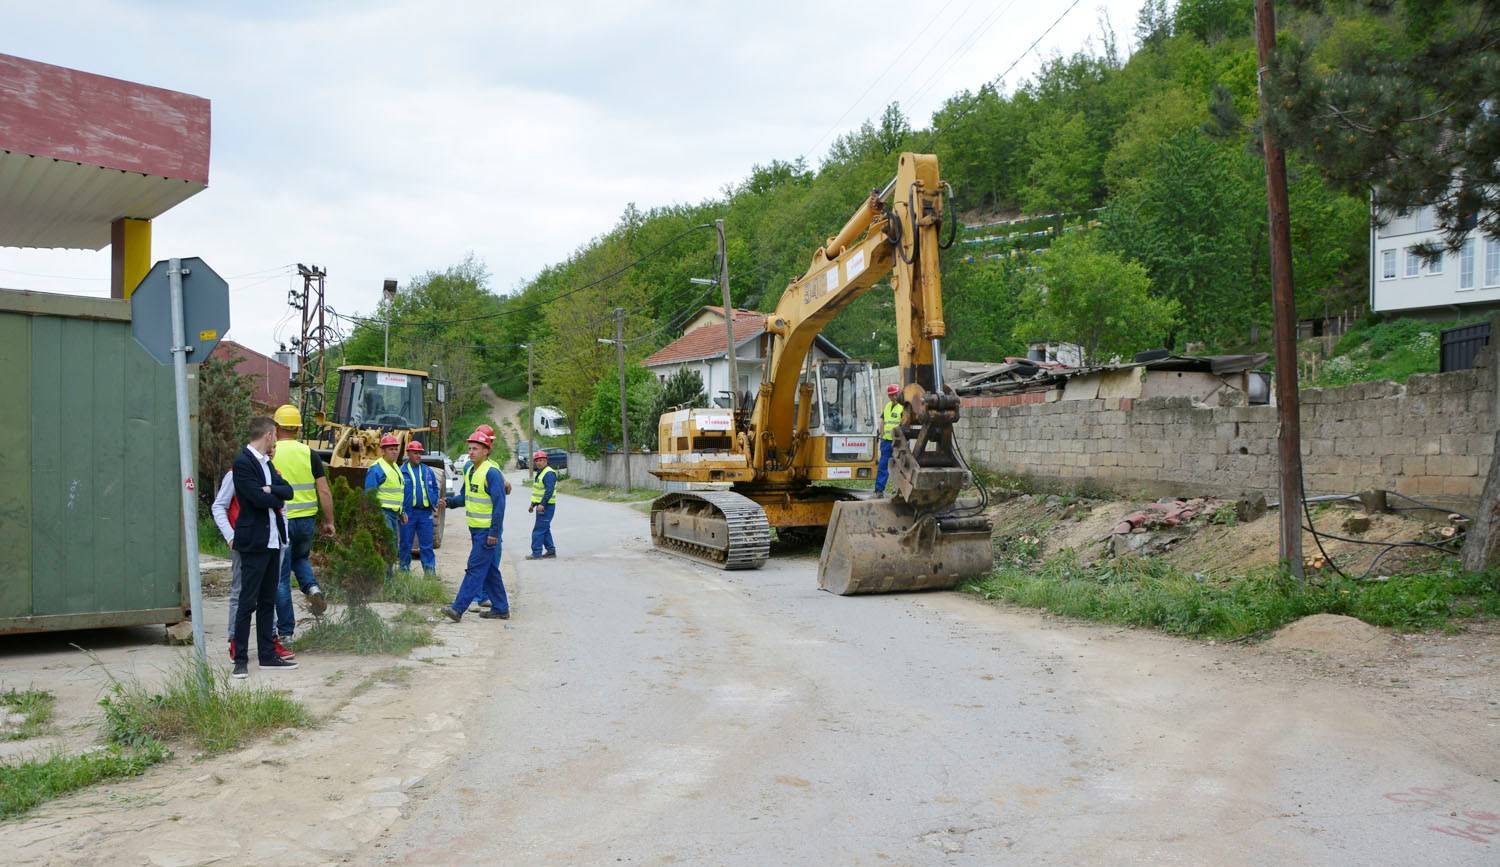 Zgjerimi i rrugës Mramor - Grashticë kap shifrën prej 1.2 milion euro